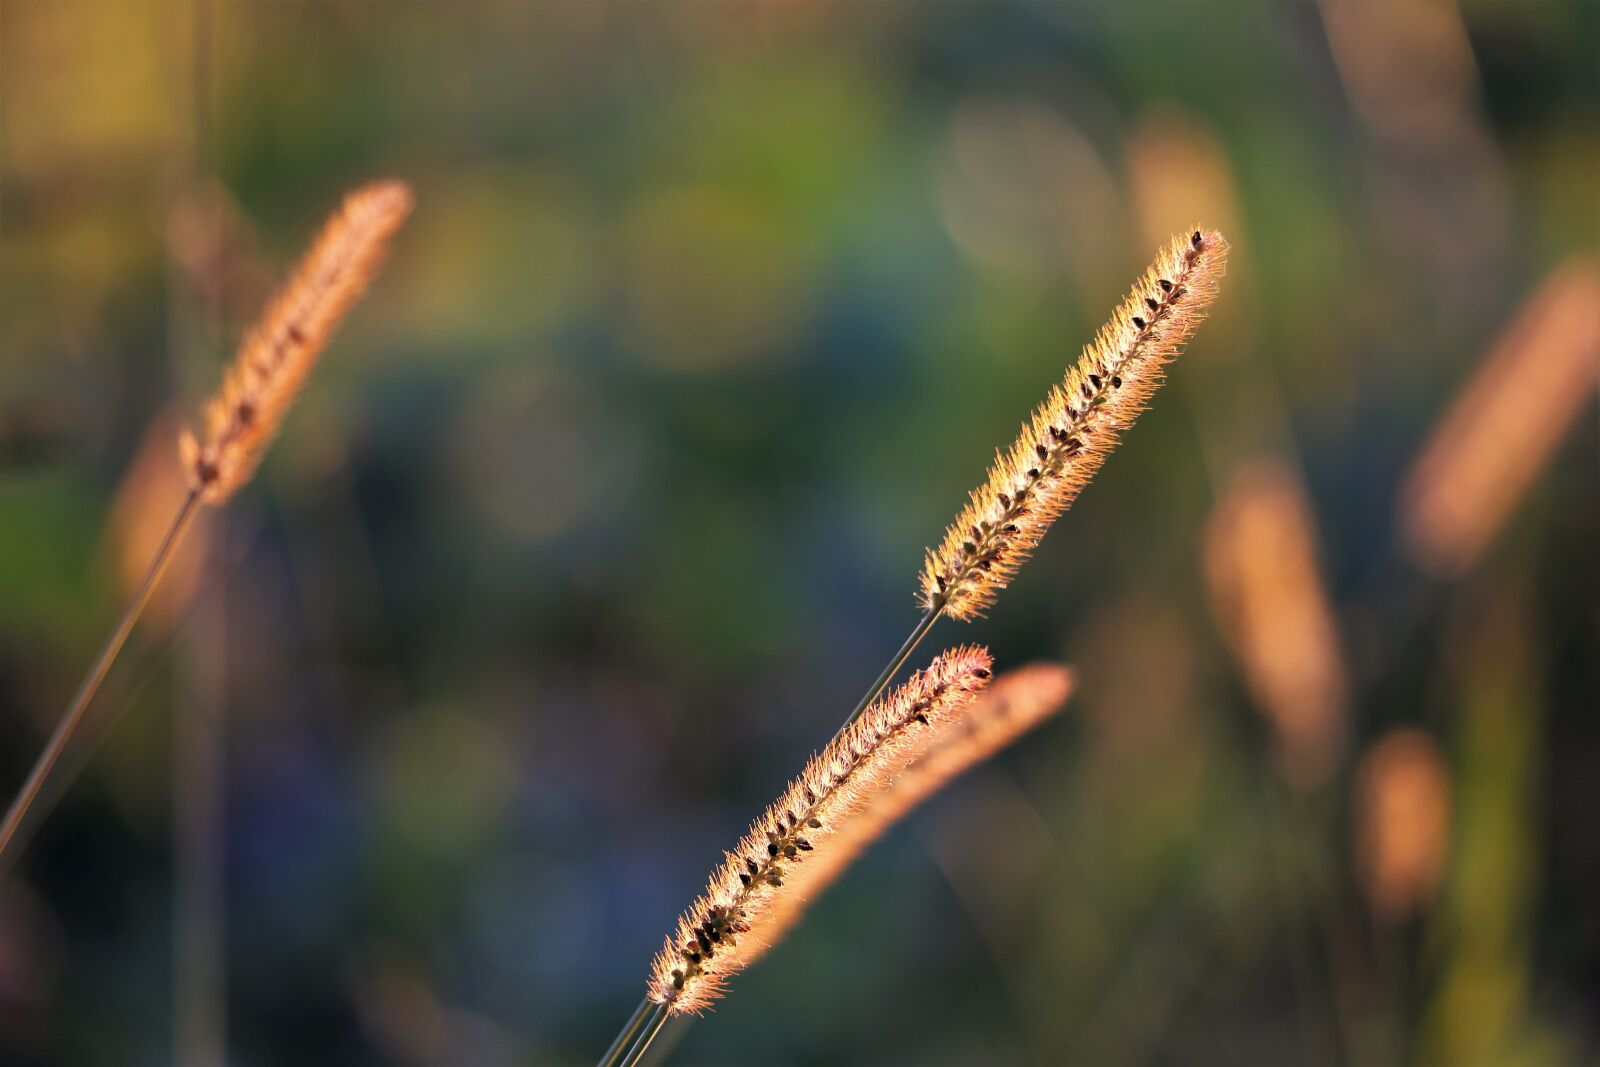 Canon EOS 6D sample photo. Grass, meadow, autumn photography